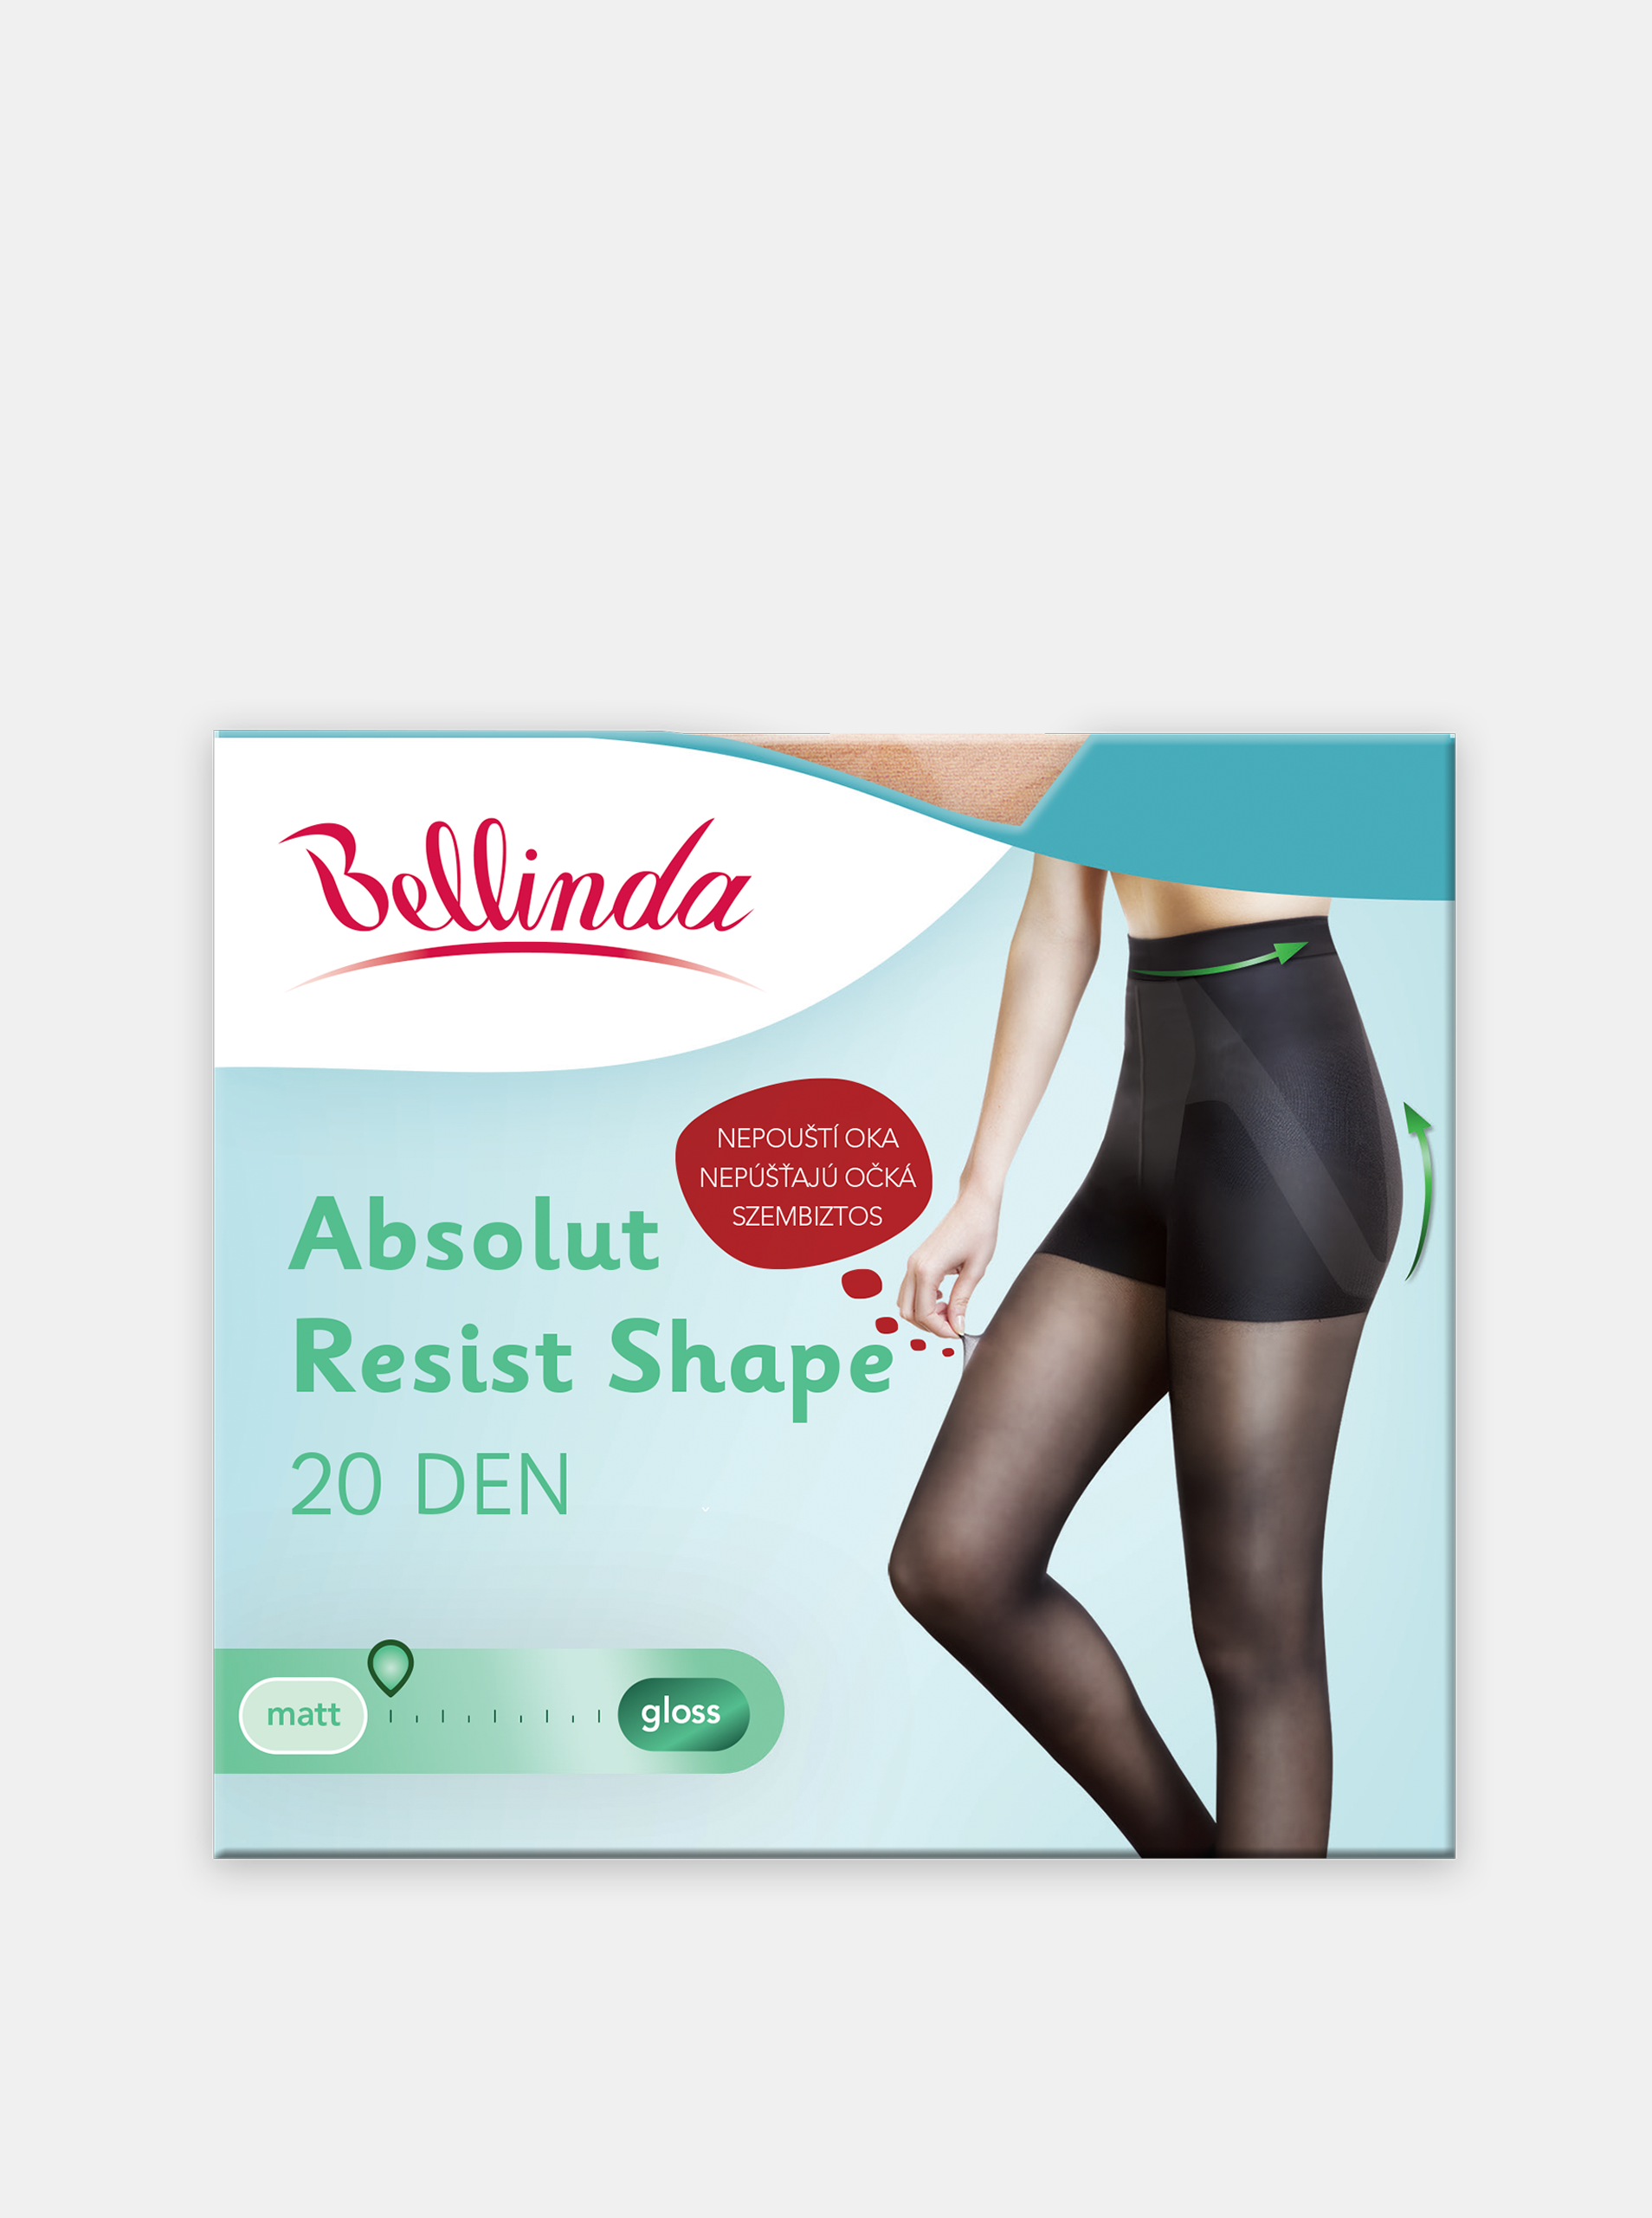 Punčochové kalhoty ABSOLUT RESIST SHAPE 20 DEN - Formující punčochové kalhoty, navíc nepouští oka - černá